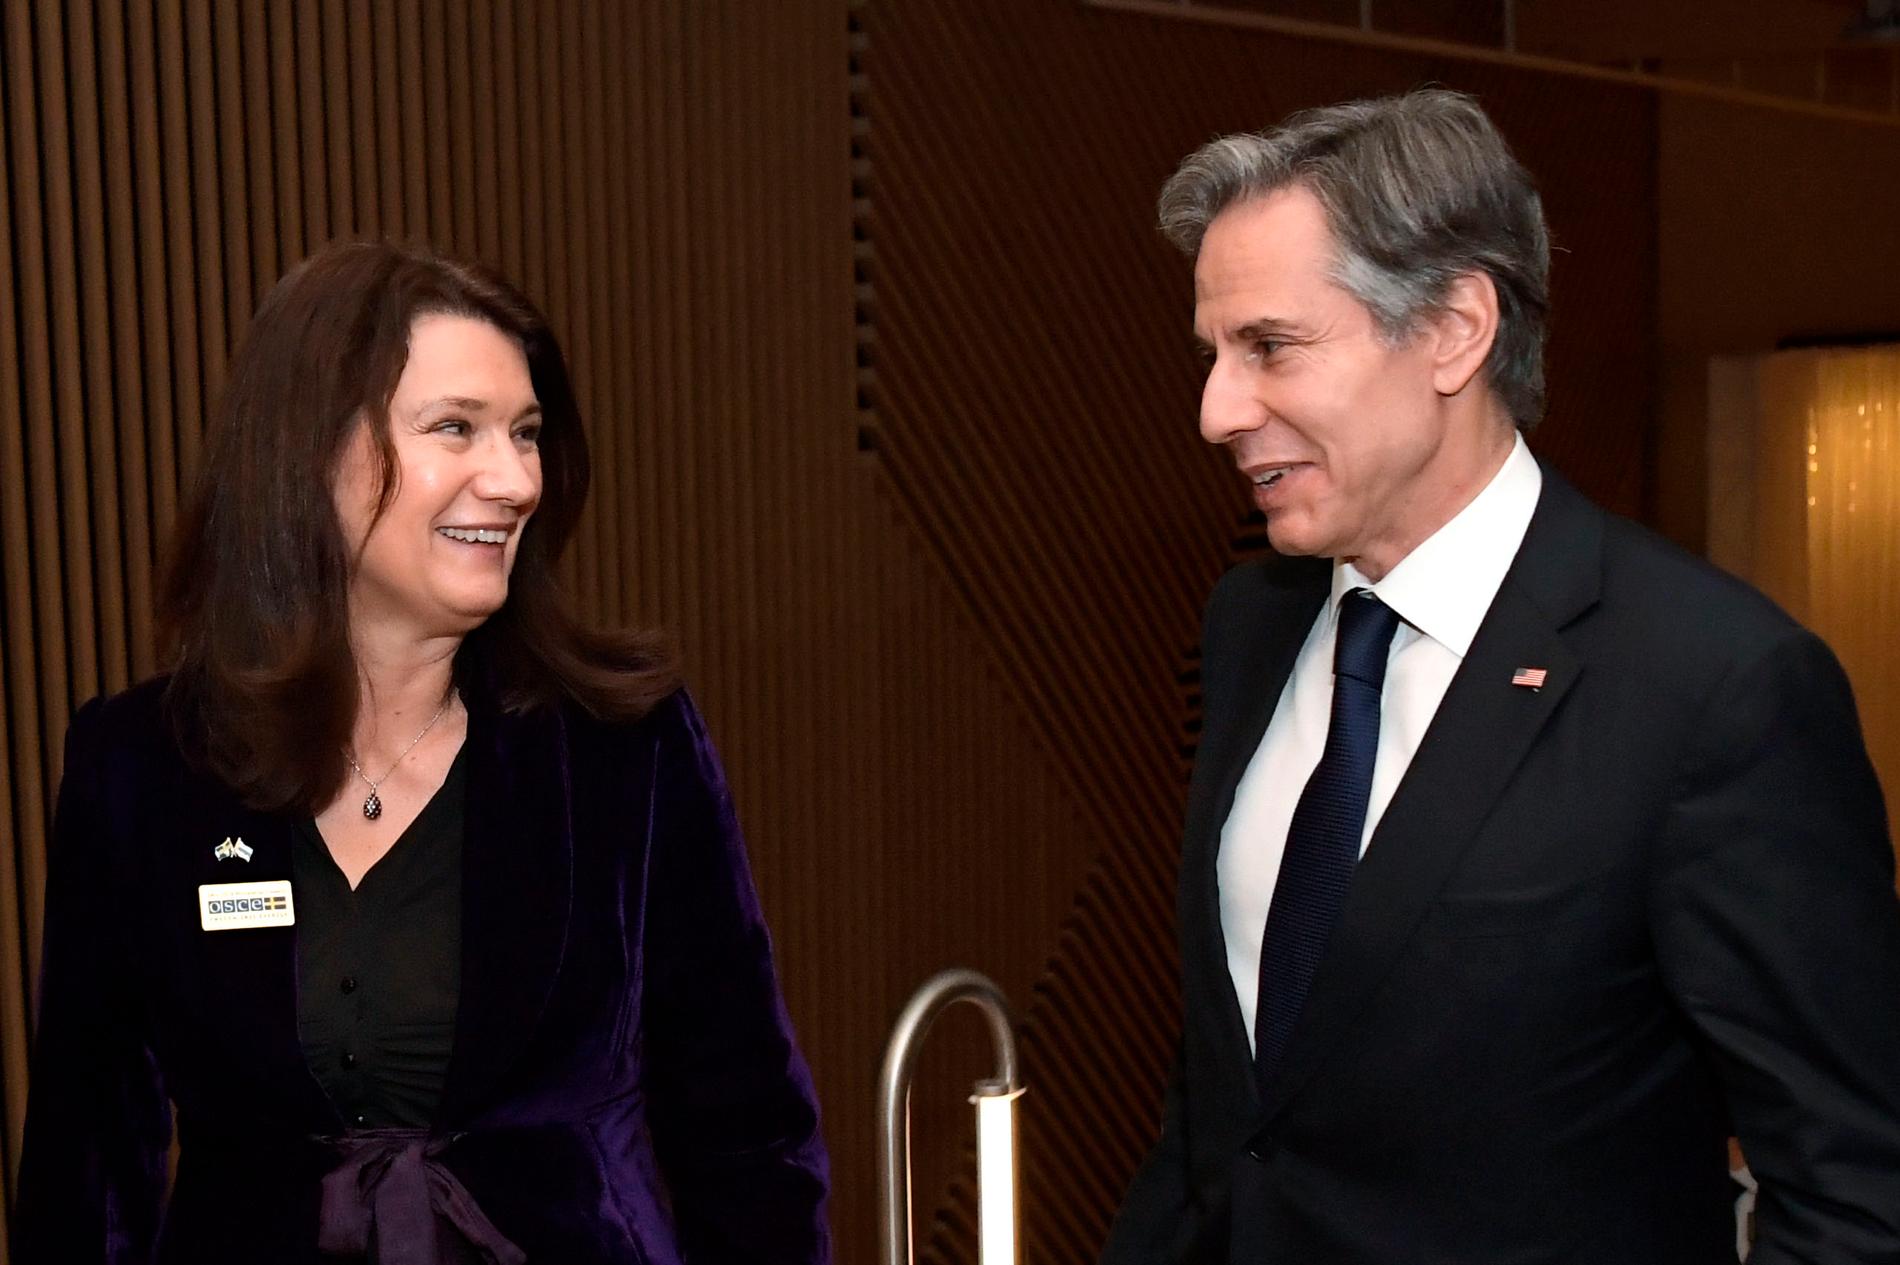 Sveriges utrikesminister Ann Linde (S) hälsar USA:s utrikesminister Antony Blinken välkommen när han anländer för att delta i OSSE-mötet som hålls i Stockholm på torsdagen och fredagen.